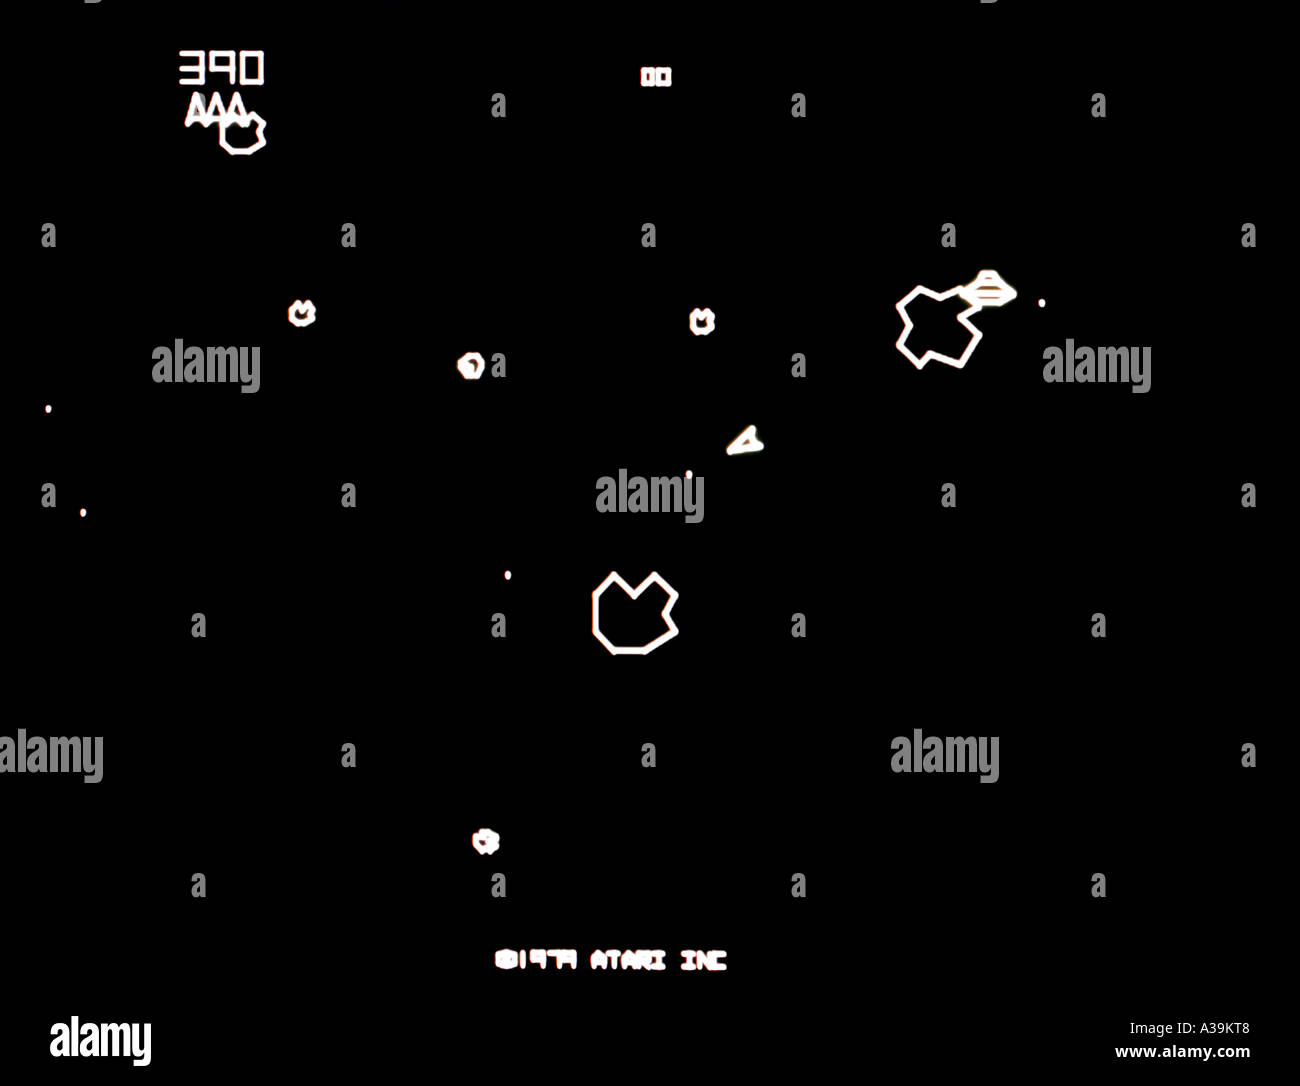 Asteroidi Atari 1979 vintage videogioco arcade screenshot - solo uso editoriale Foto Stock